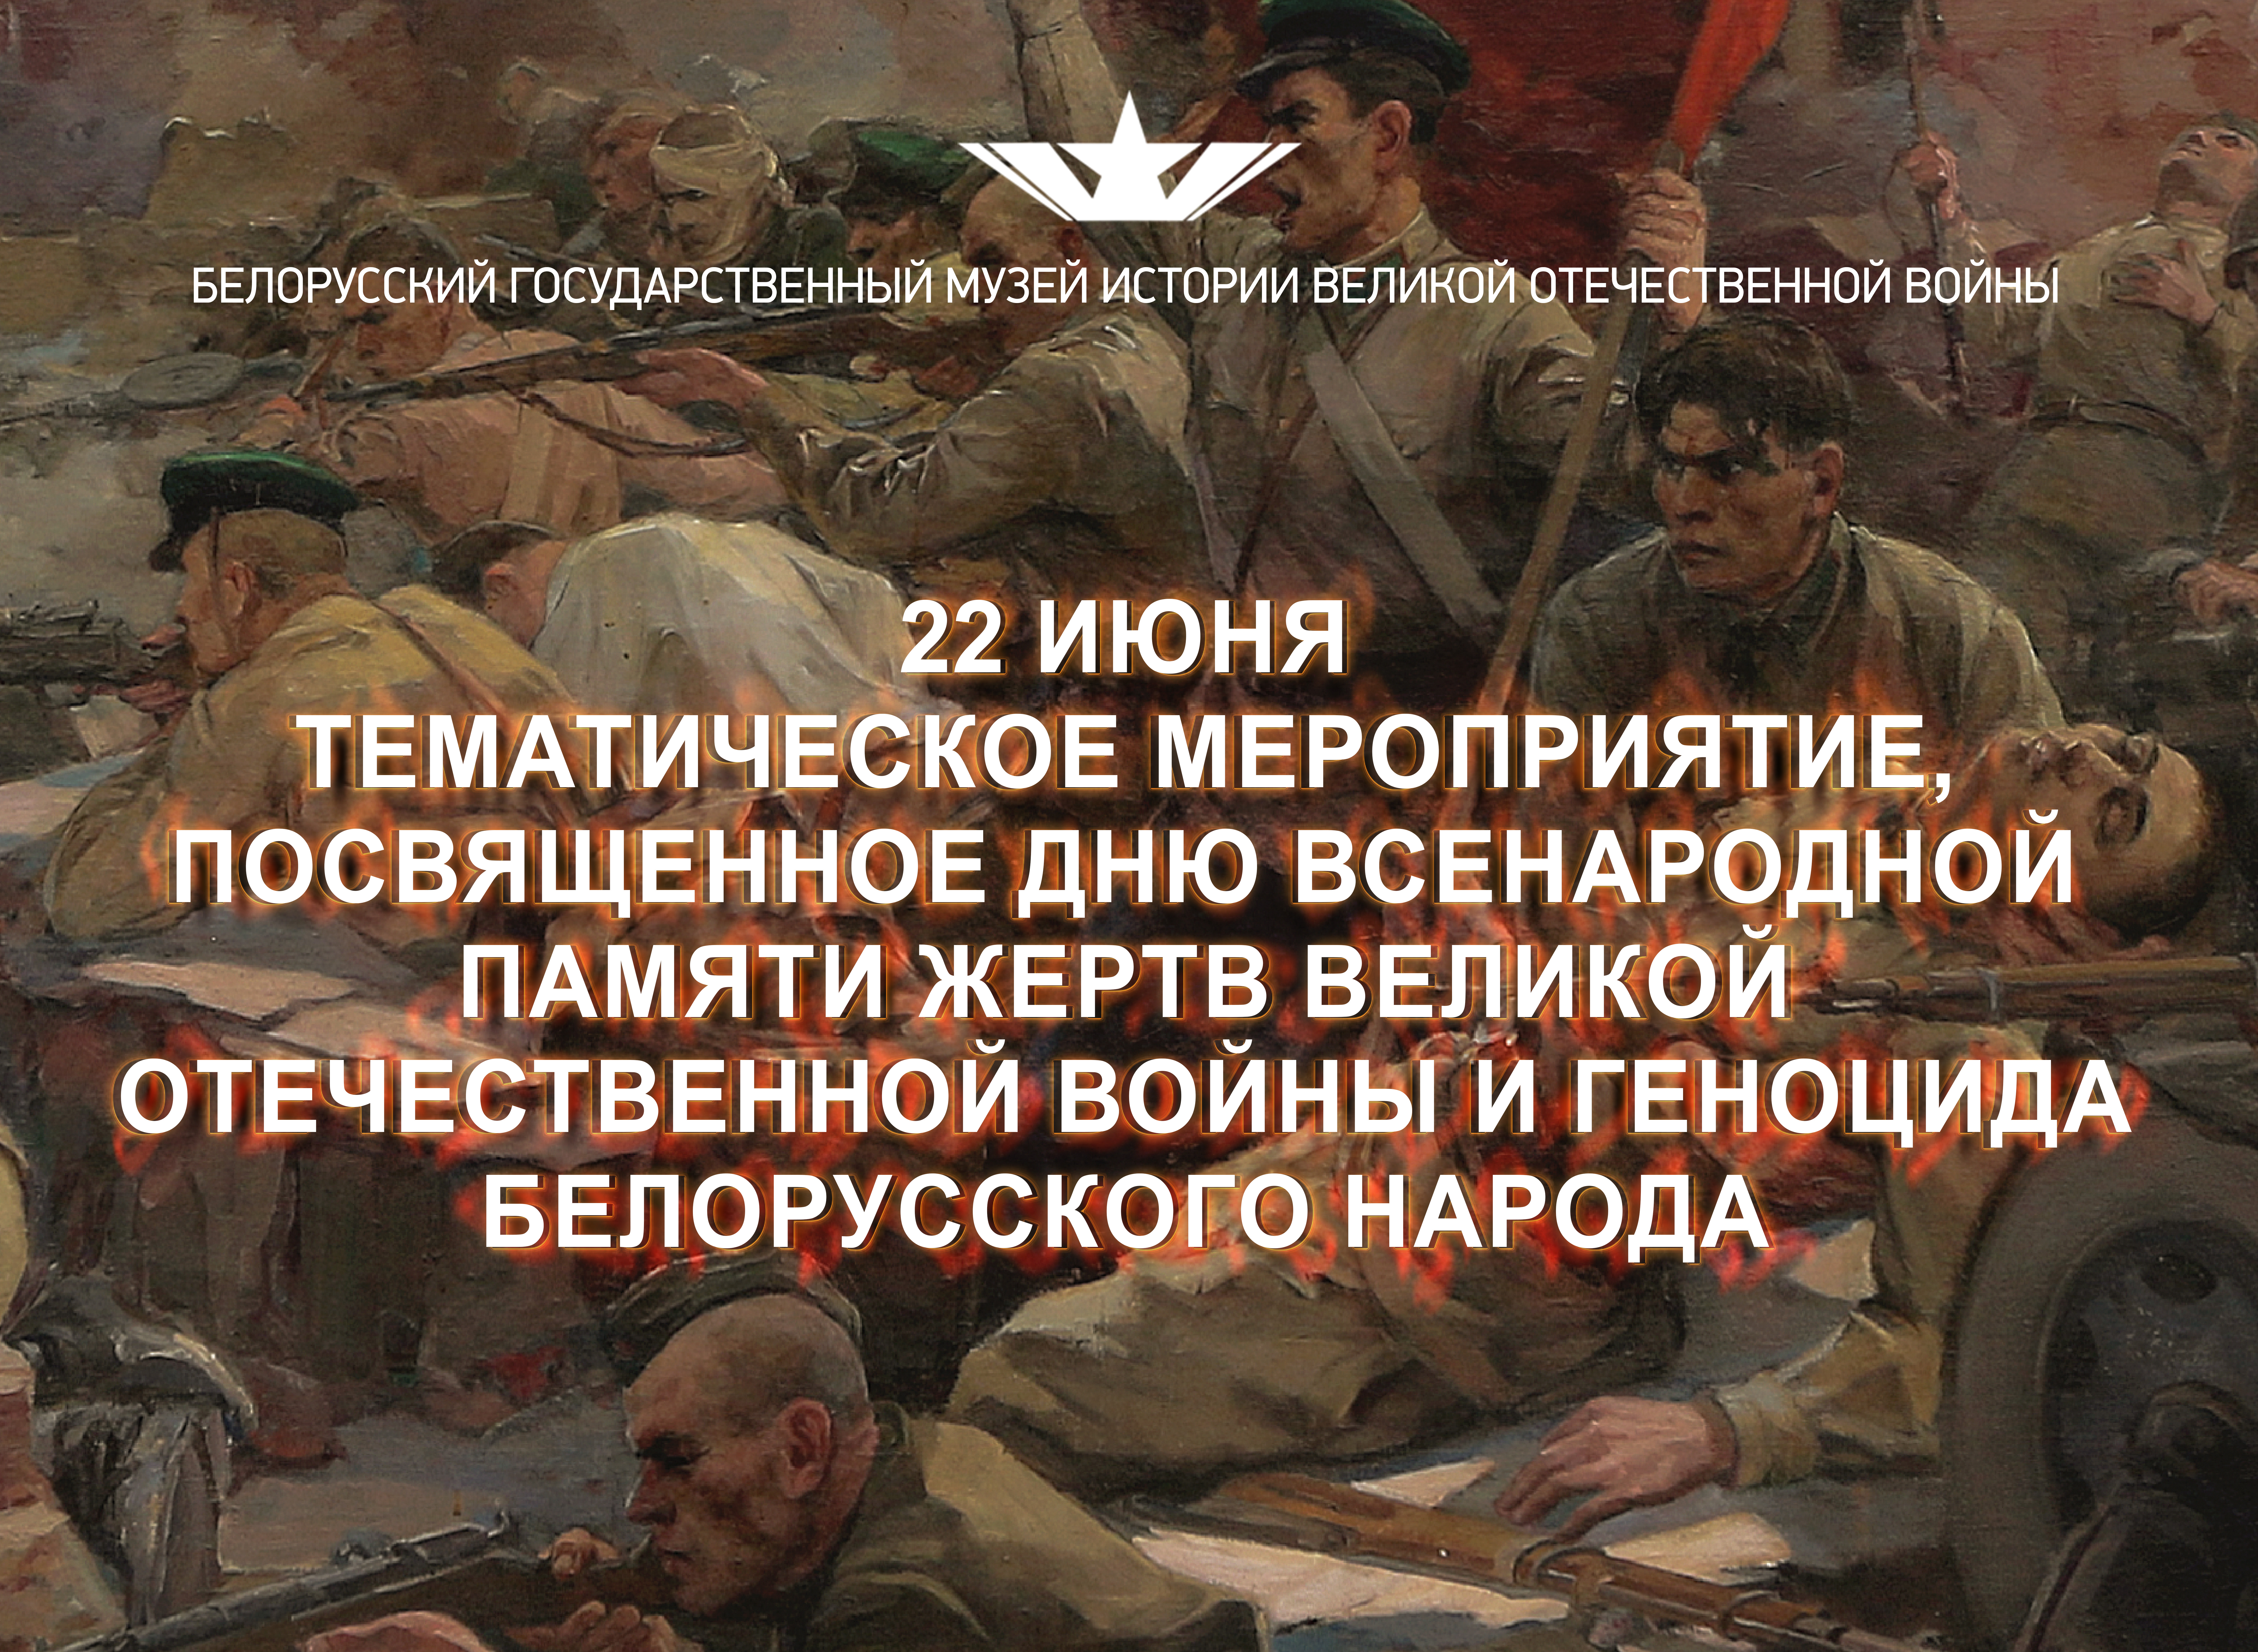 Мероприятие, посвященное Дню всенародной памяти жертв Великой Отечественной войны и геноцида белорусского народа